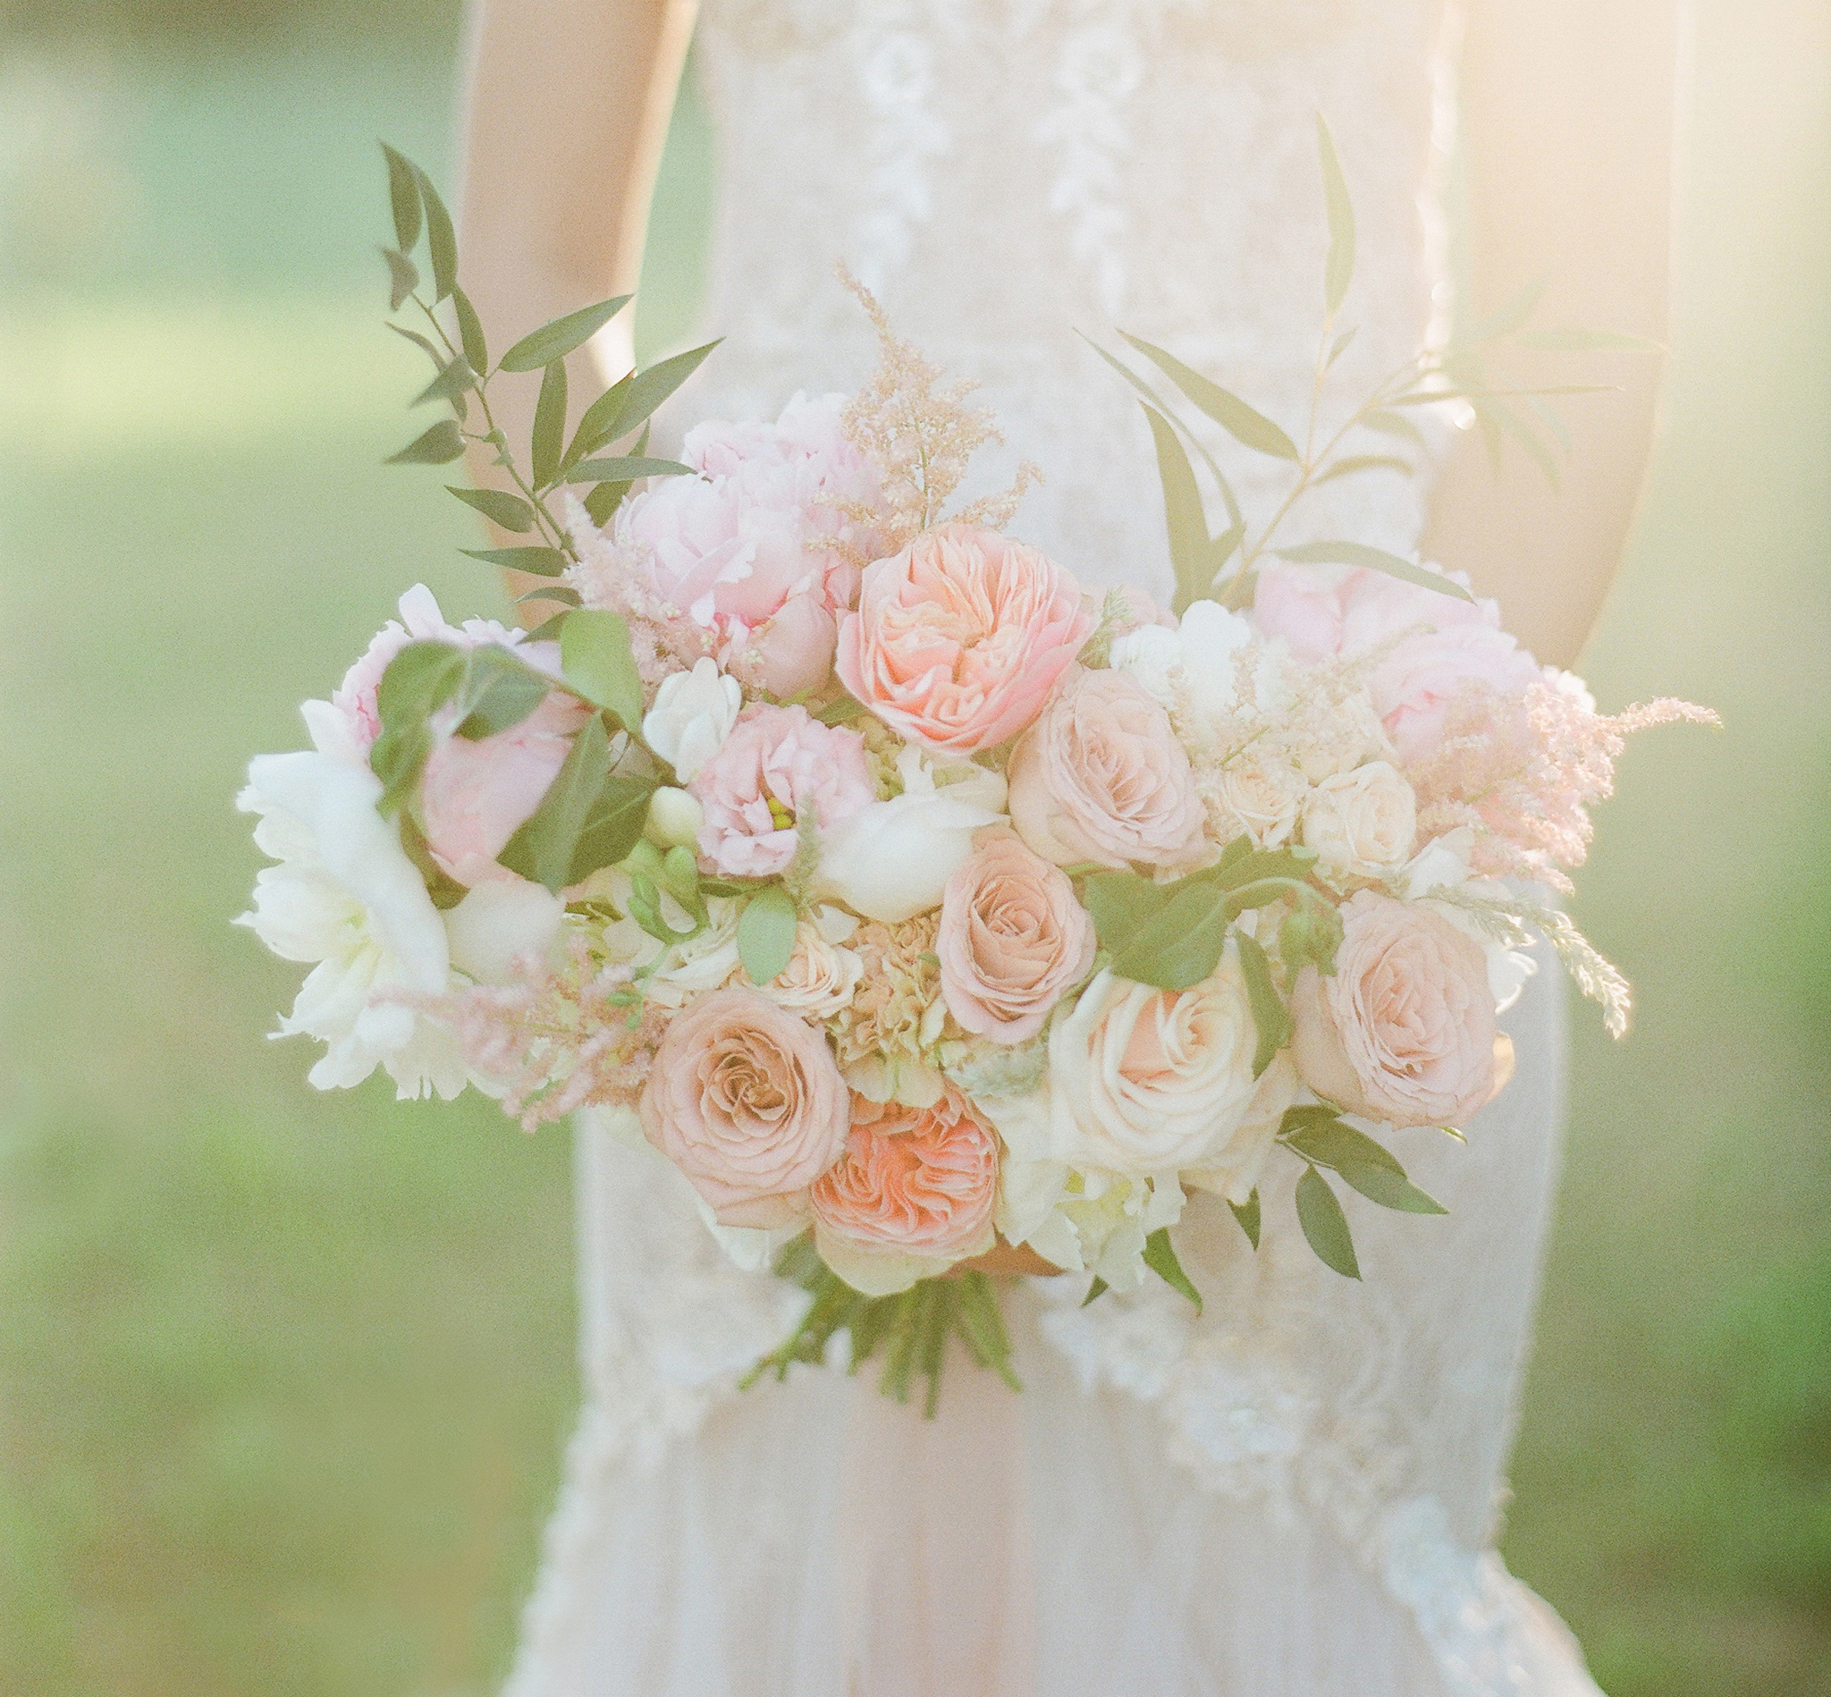 wedding floral designer provence château estoublon alpilles decorateur mariage fleurs fleuriste decorateur floral wedding designer